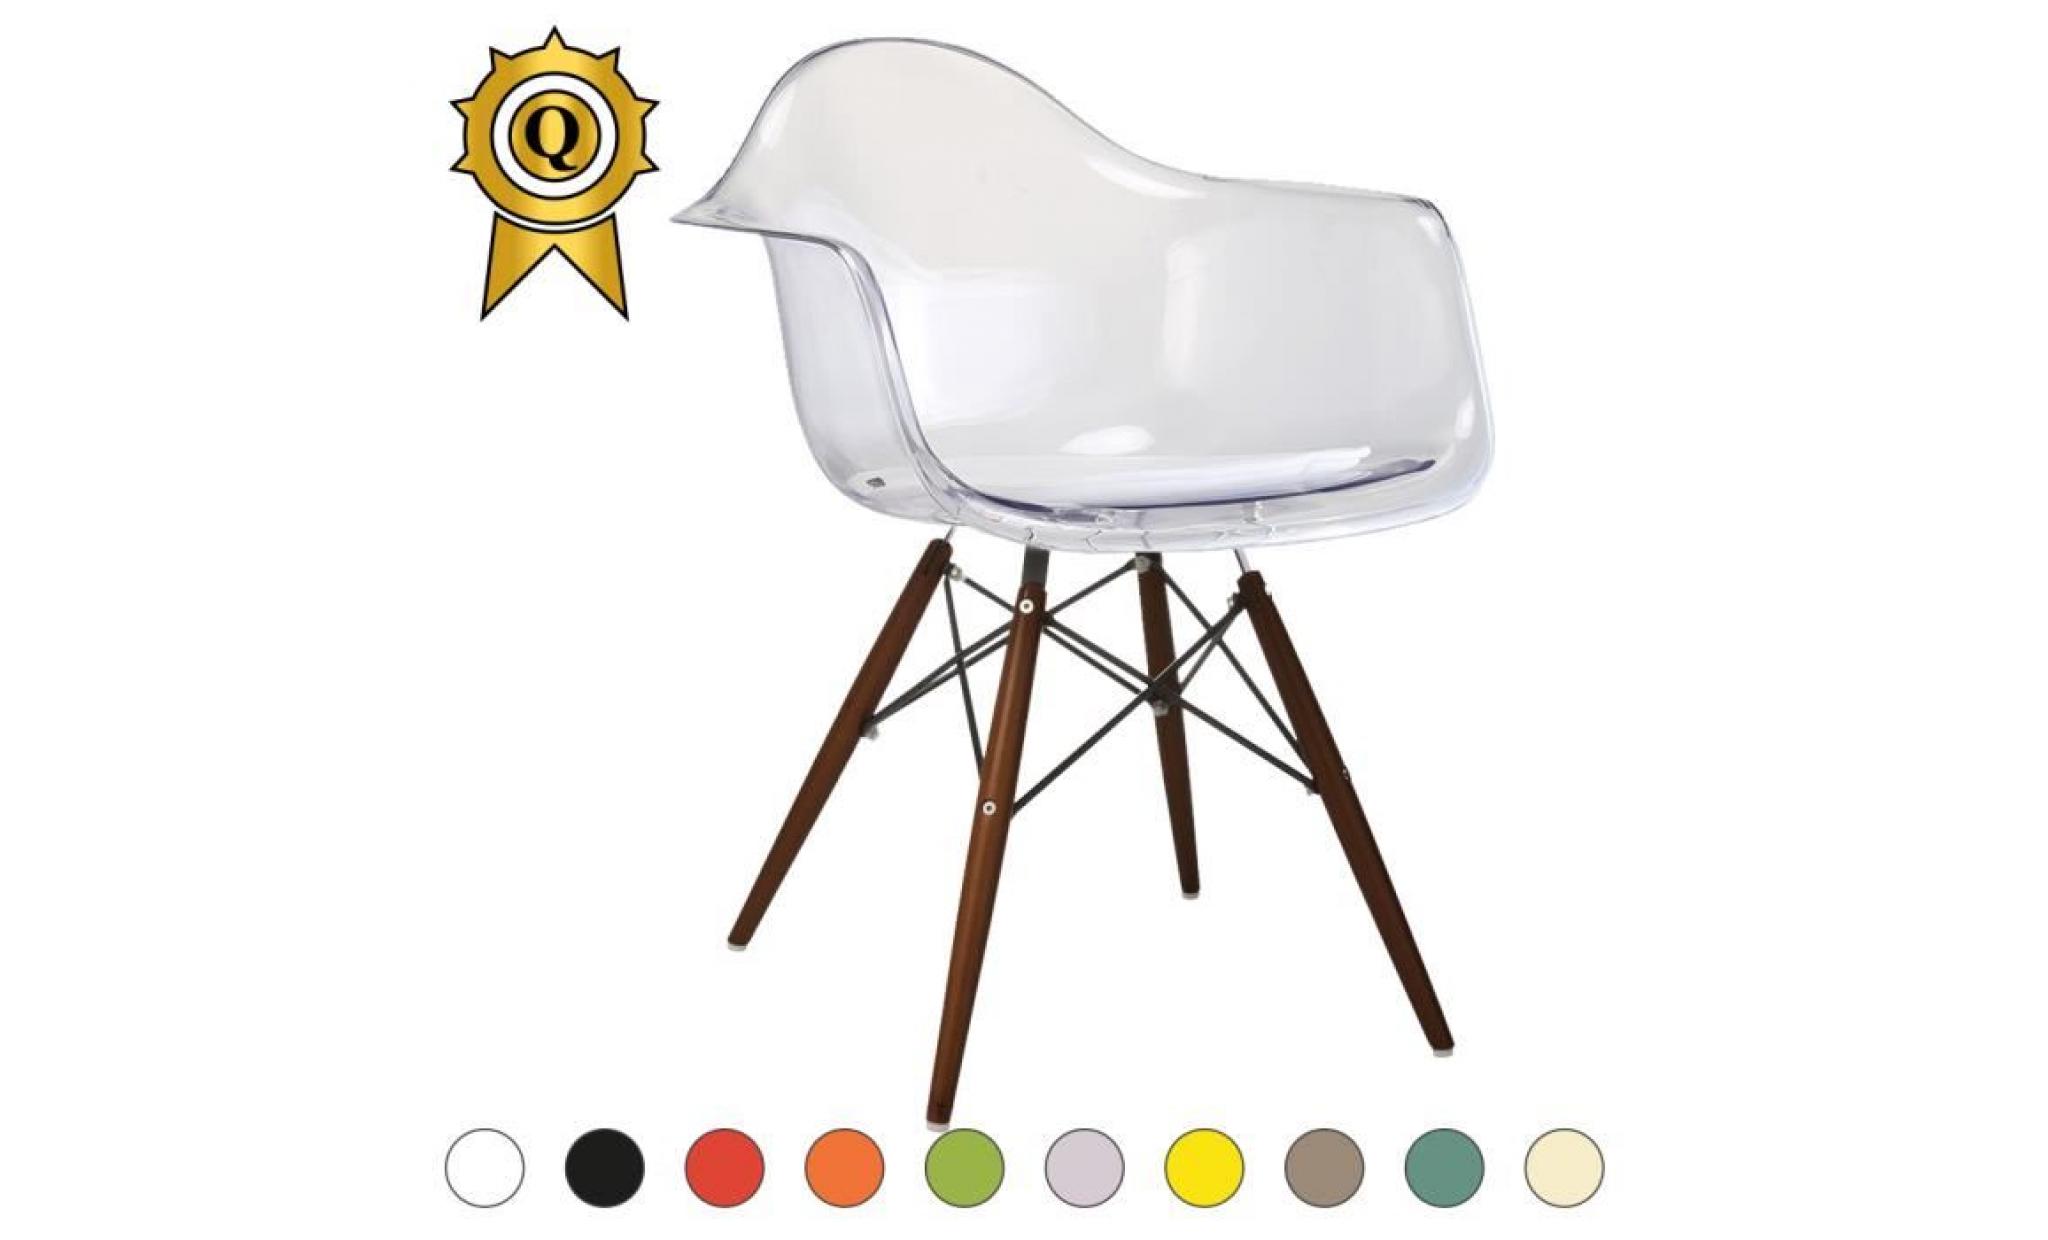 1 x fauteuil design retro style eames daw hauteur 48cm pieds en bois vernis noyer assise rouge mobistyl®